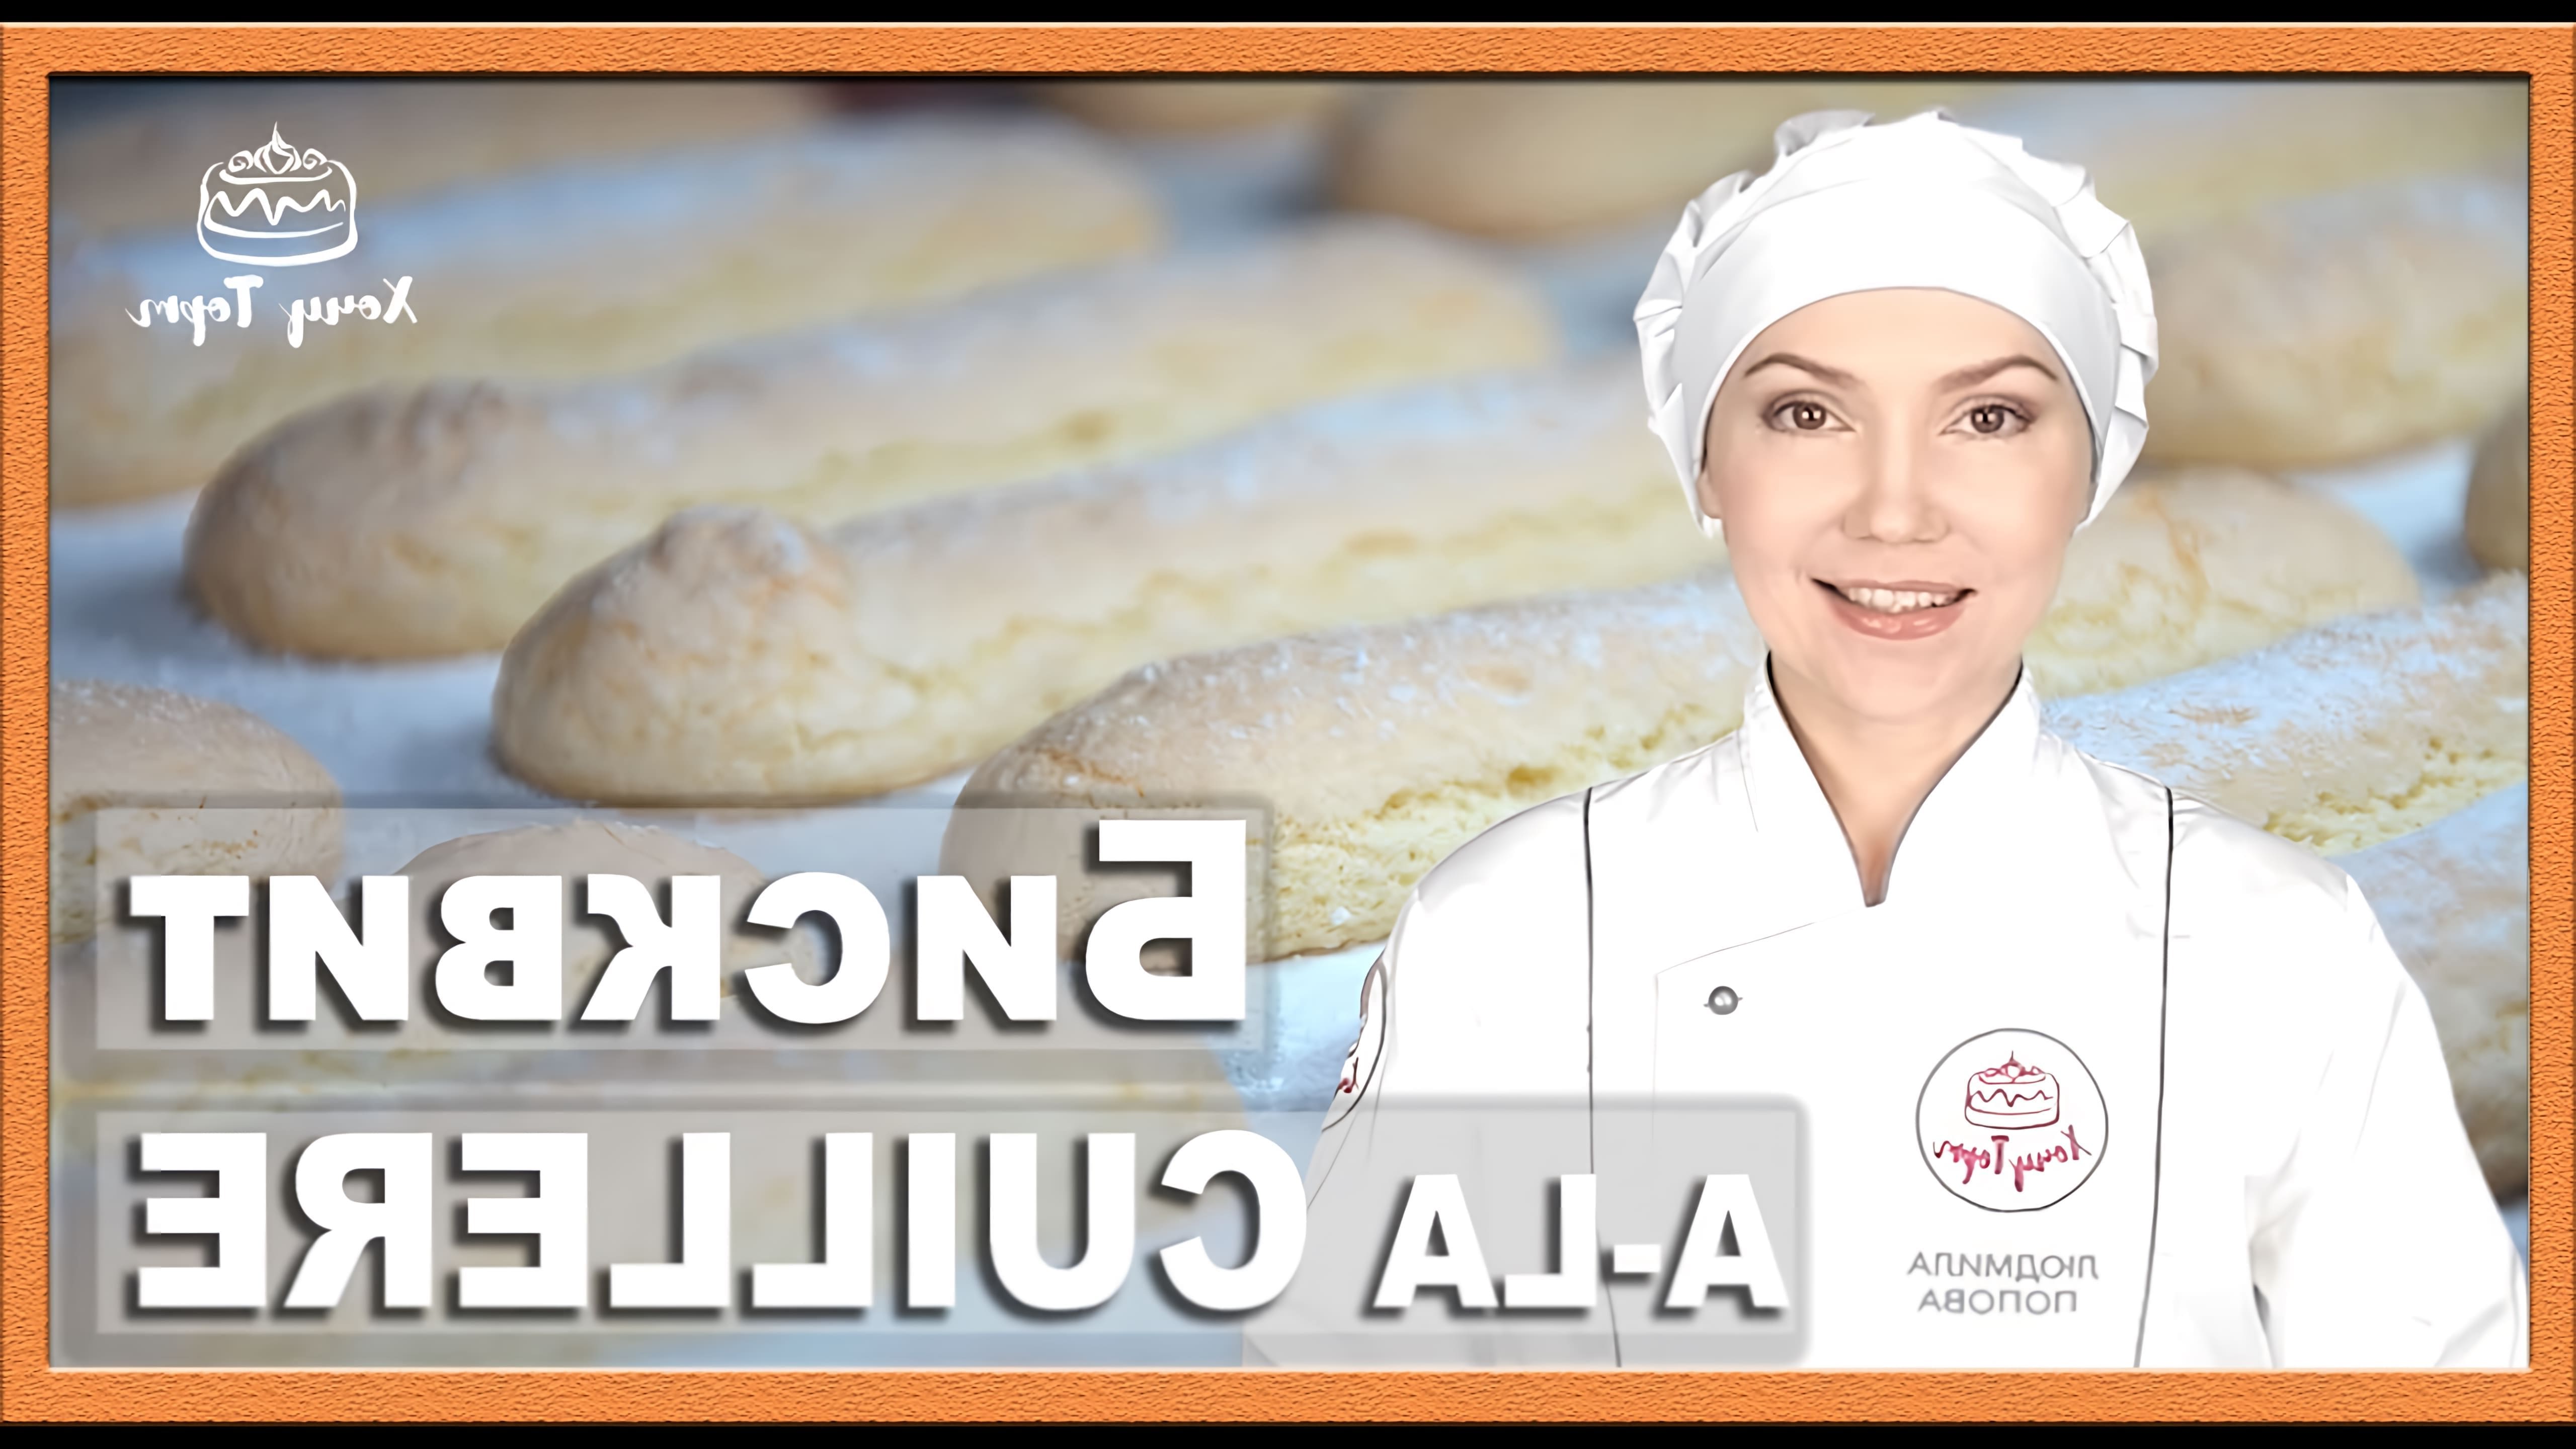 Видео как приготовить печенье савоярди (пальчики леди), которое часто используется в тирамису и других десертах, таких как шарлотта